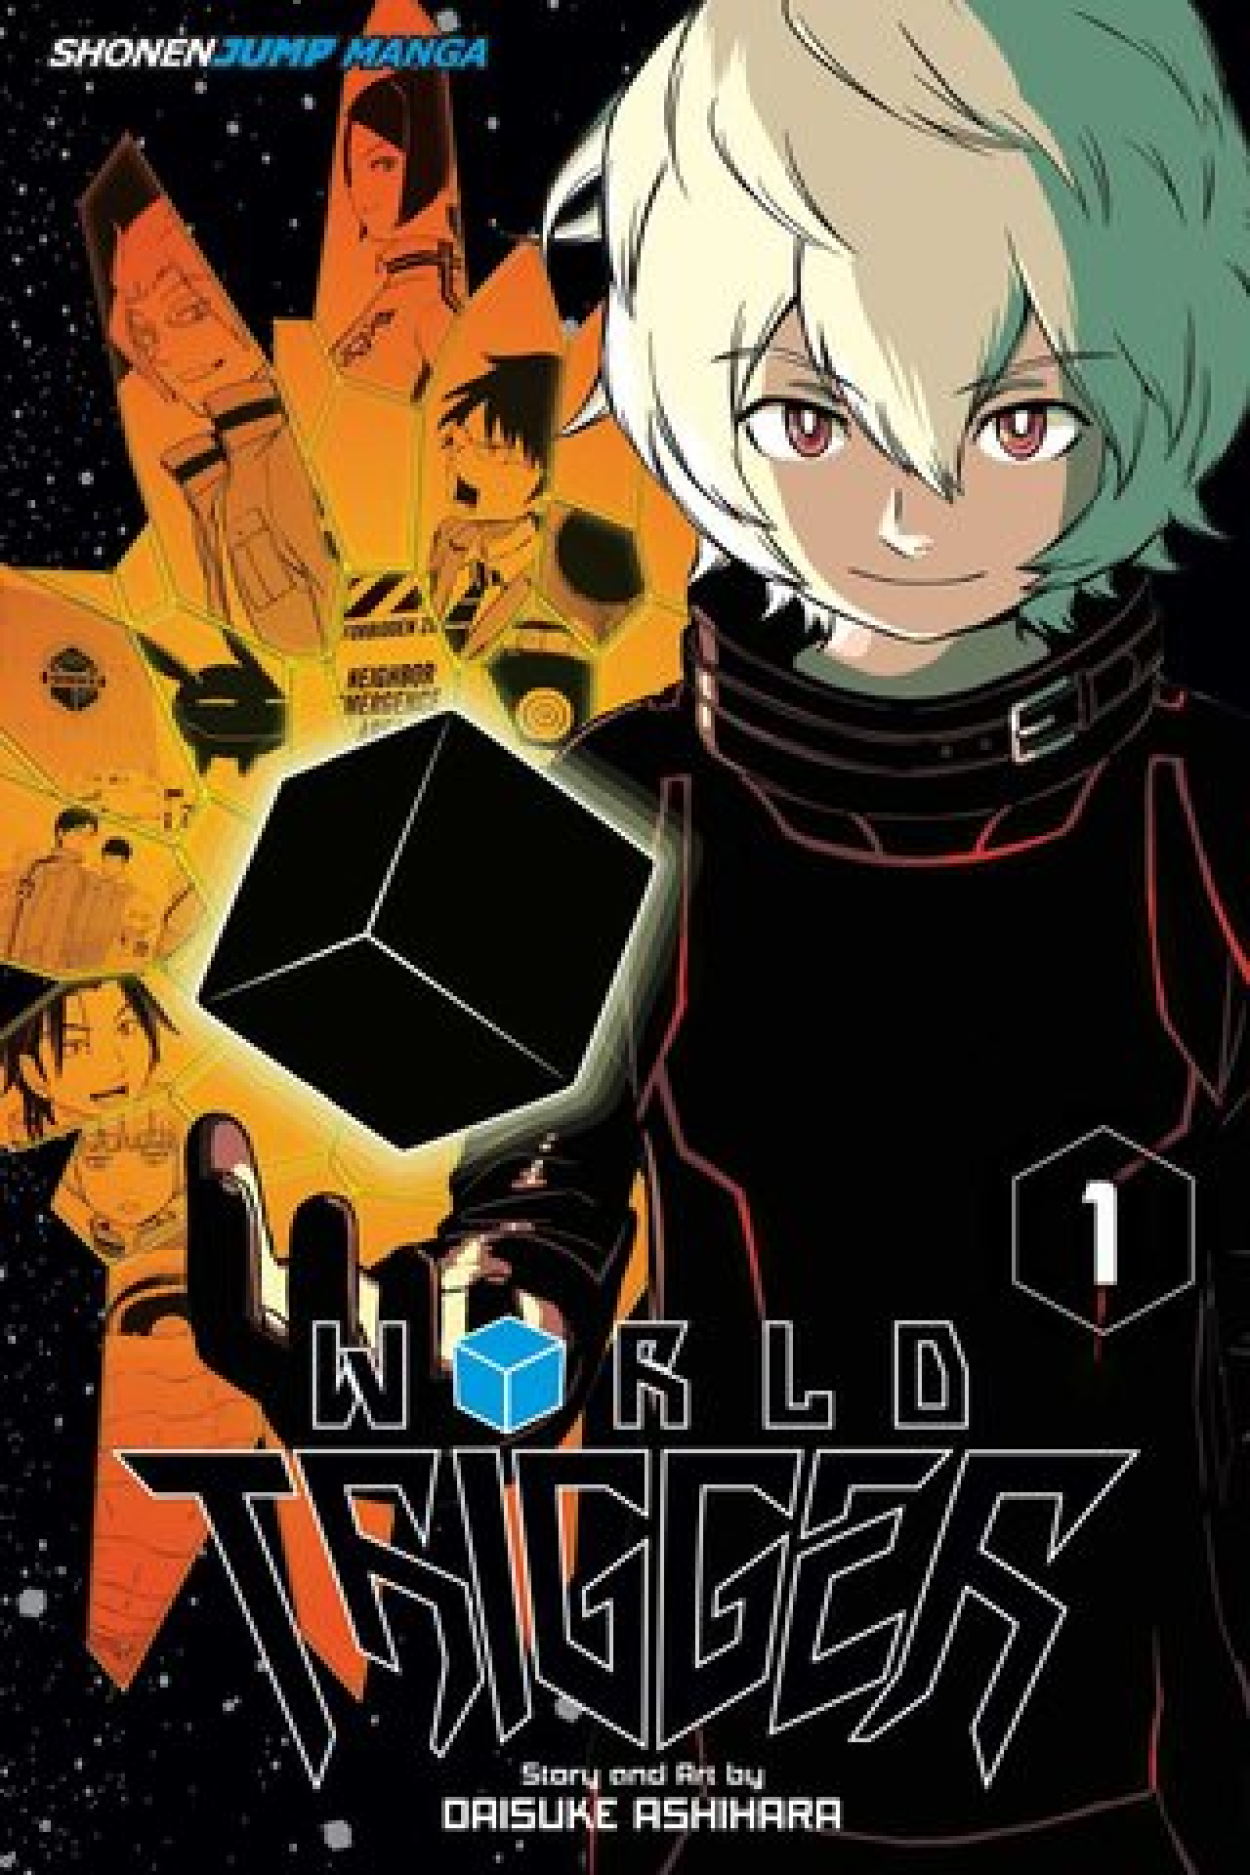 Mirai Nikki Genero: Ação , Mistério , - Mundo dos Animes 2.0